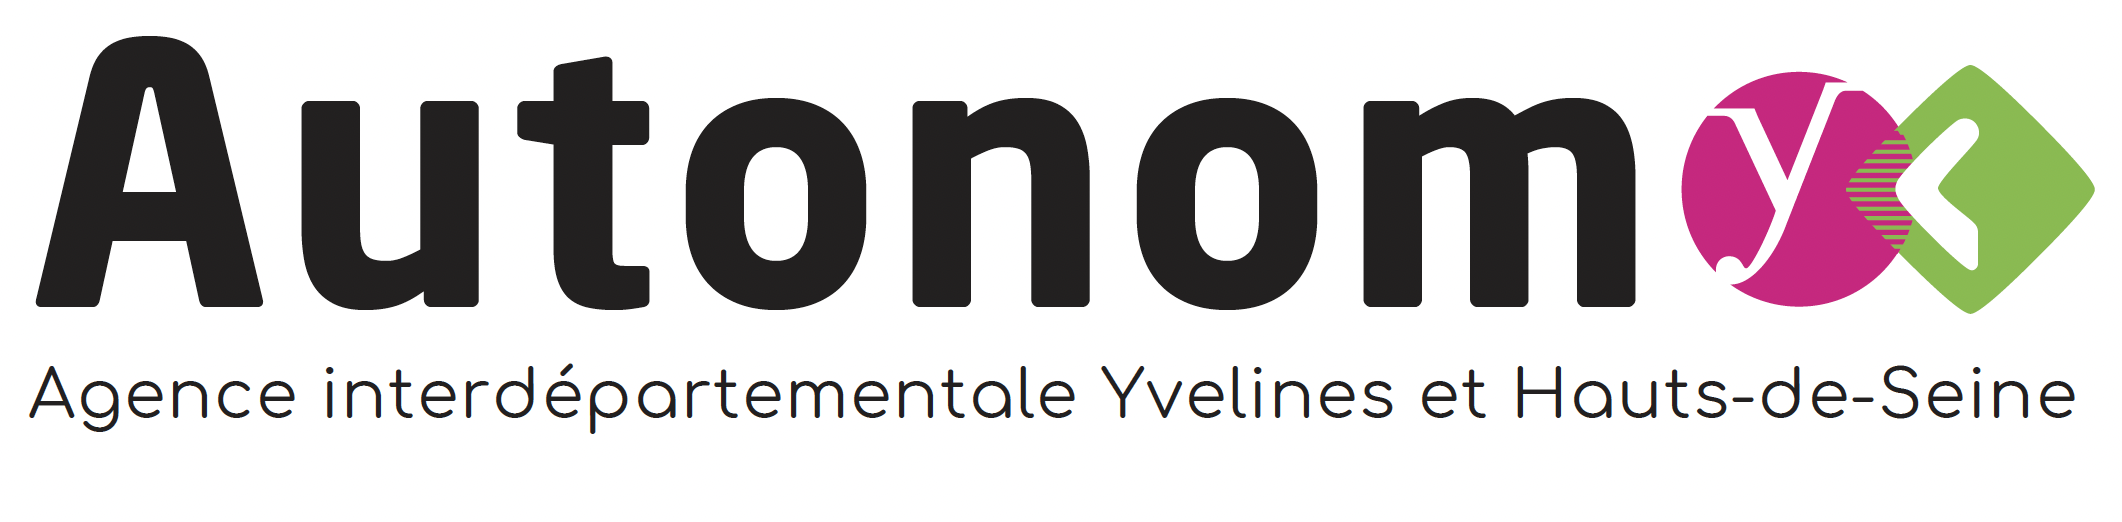 logo autonomy agence interdépartementale Yvelines et Hauts-de-Seine